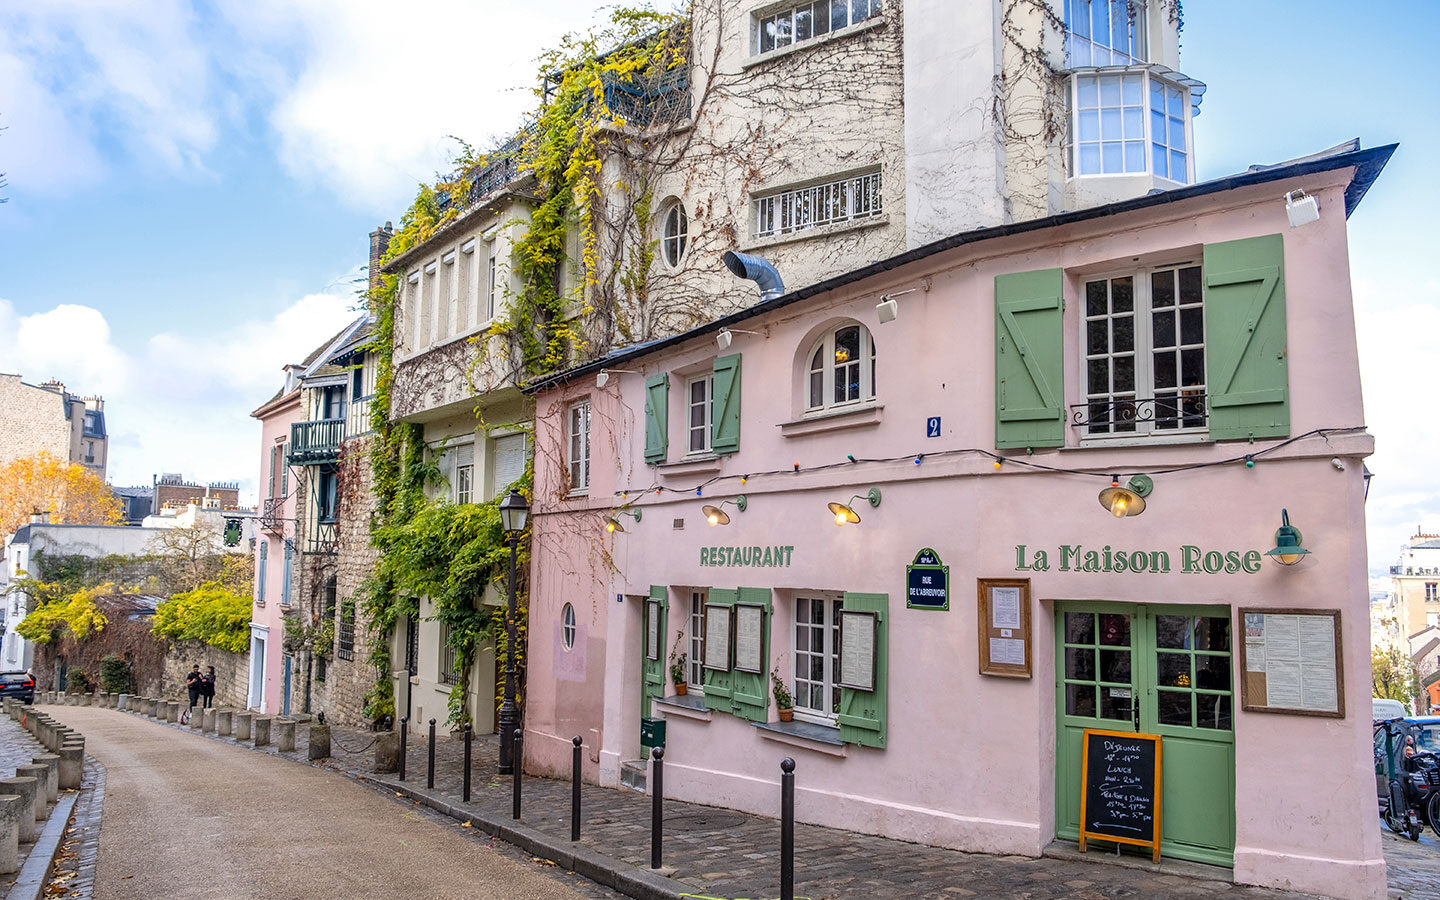 La Maison Rose café in Montmartre, Paris